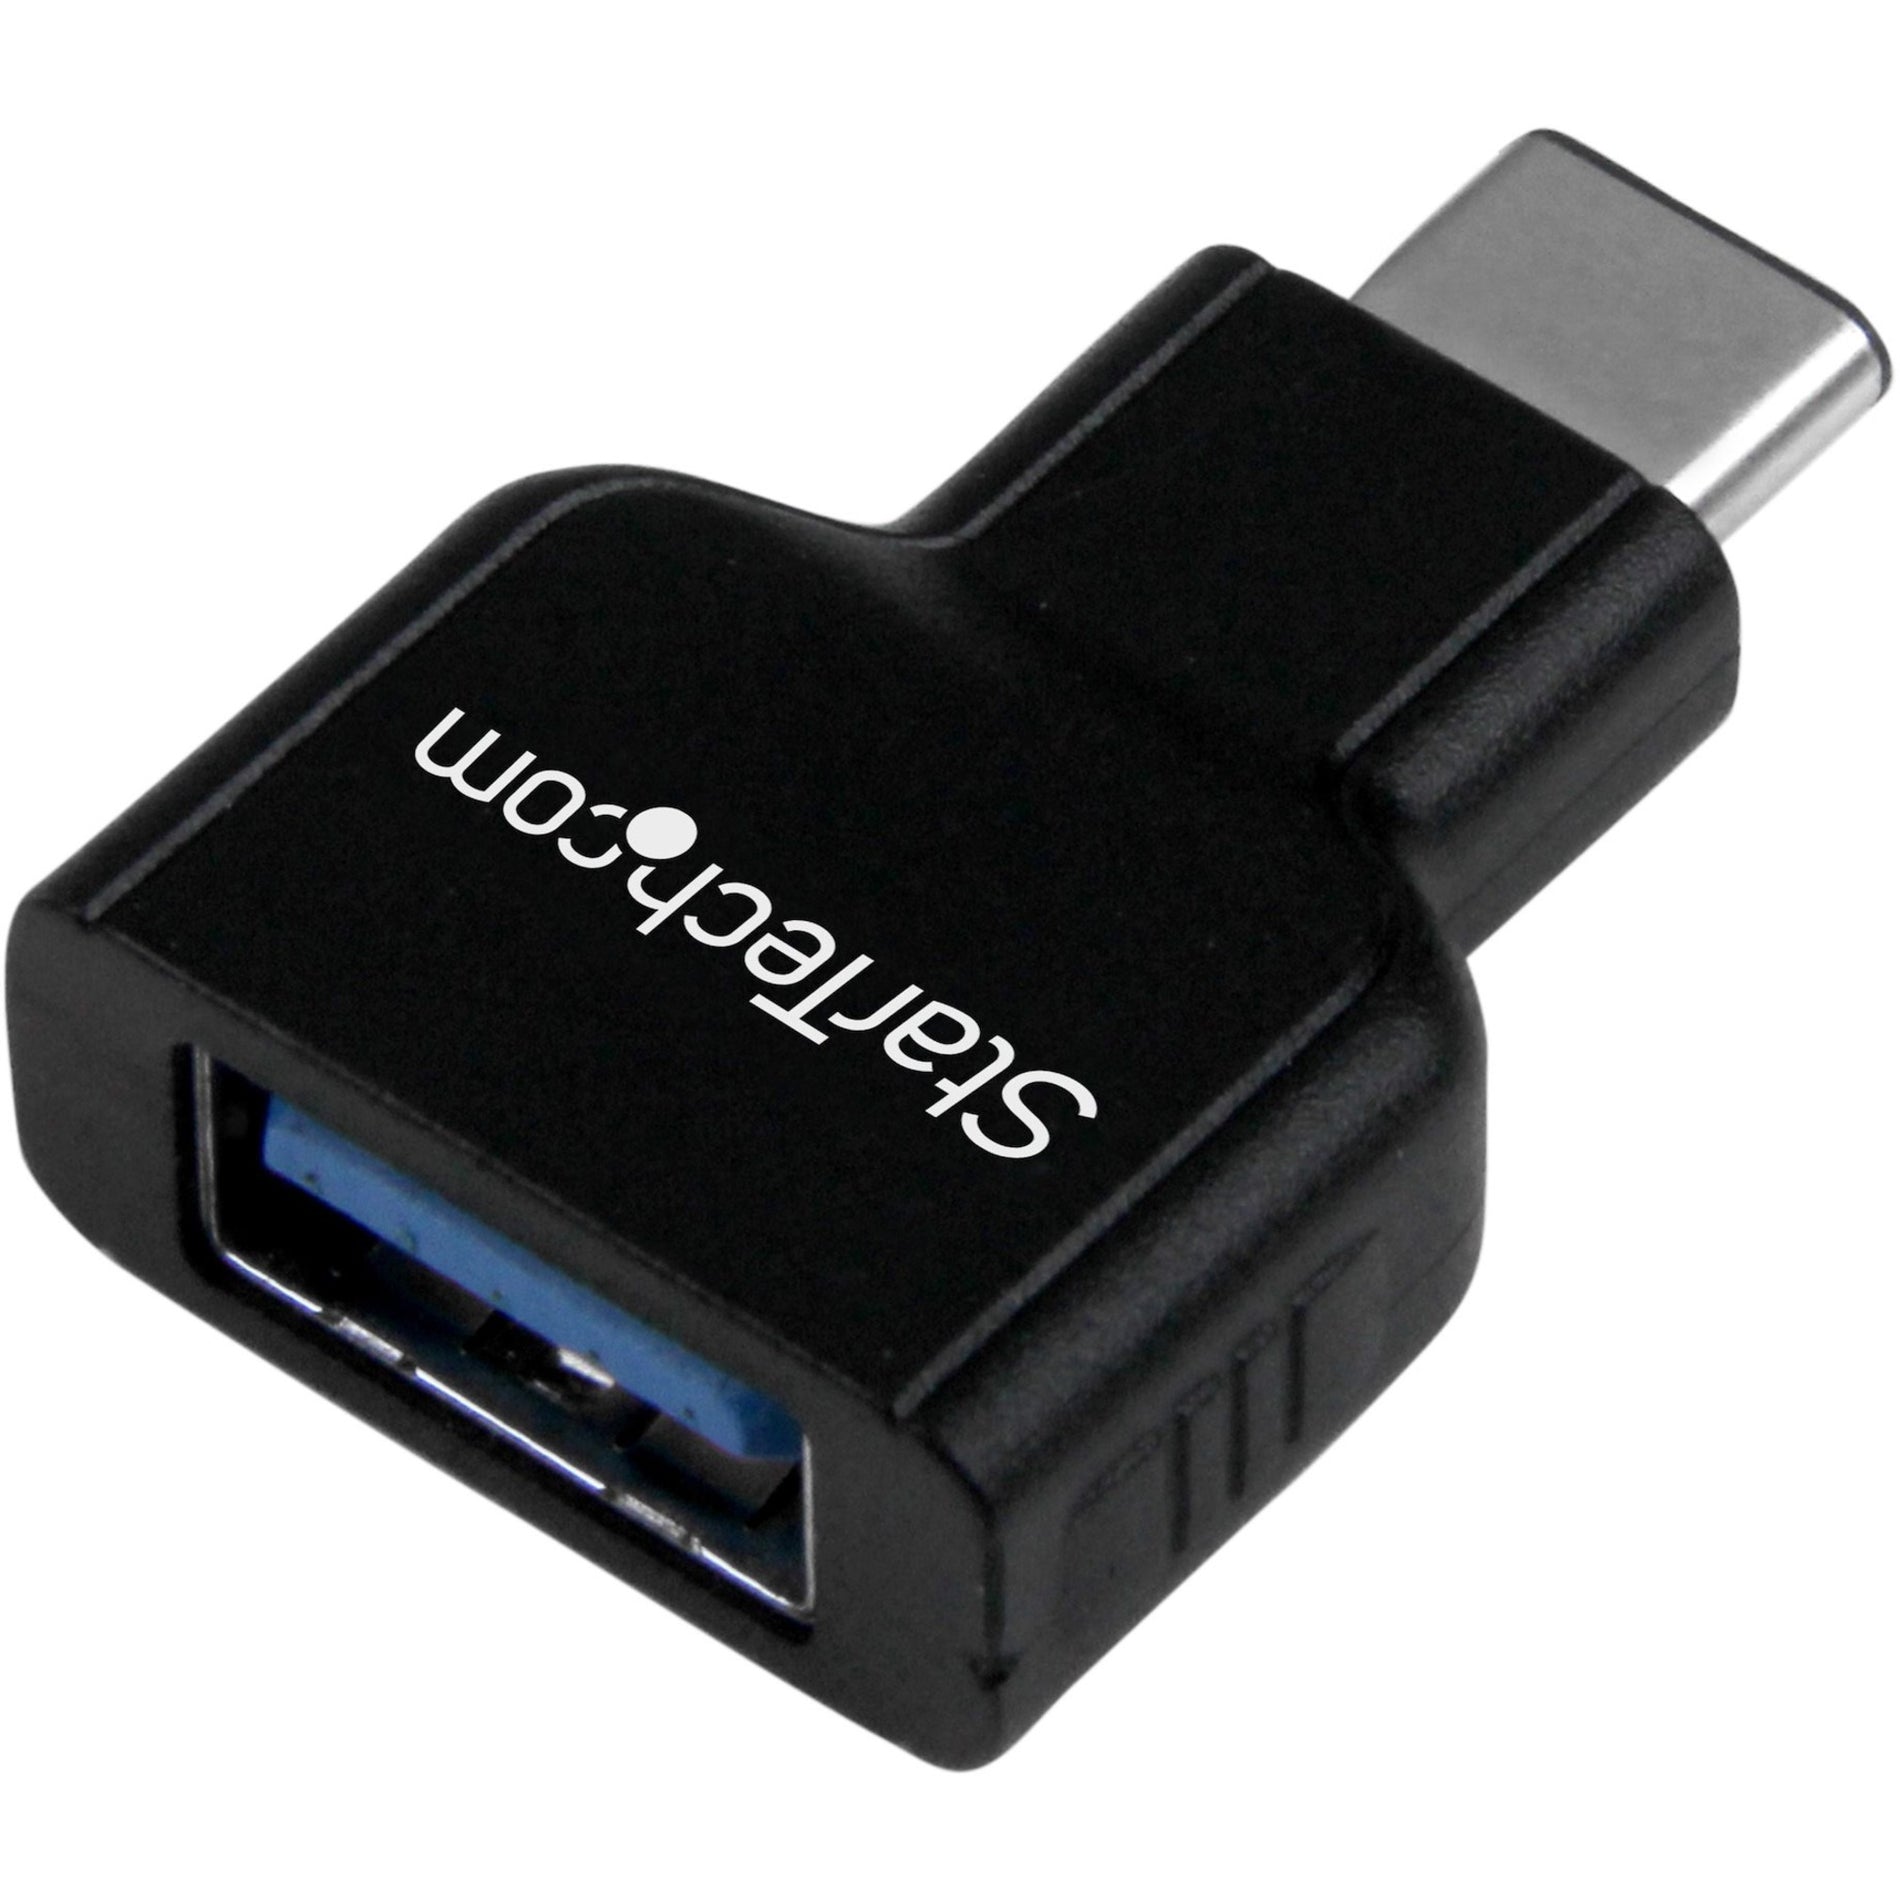 StarTech.com USB31CAADG USB-C to USB-A Adapter M/F - USB 3.0 Verbinding met USB C laptops zoals Apple MacBook Chromebook Pixel en meer